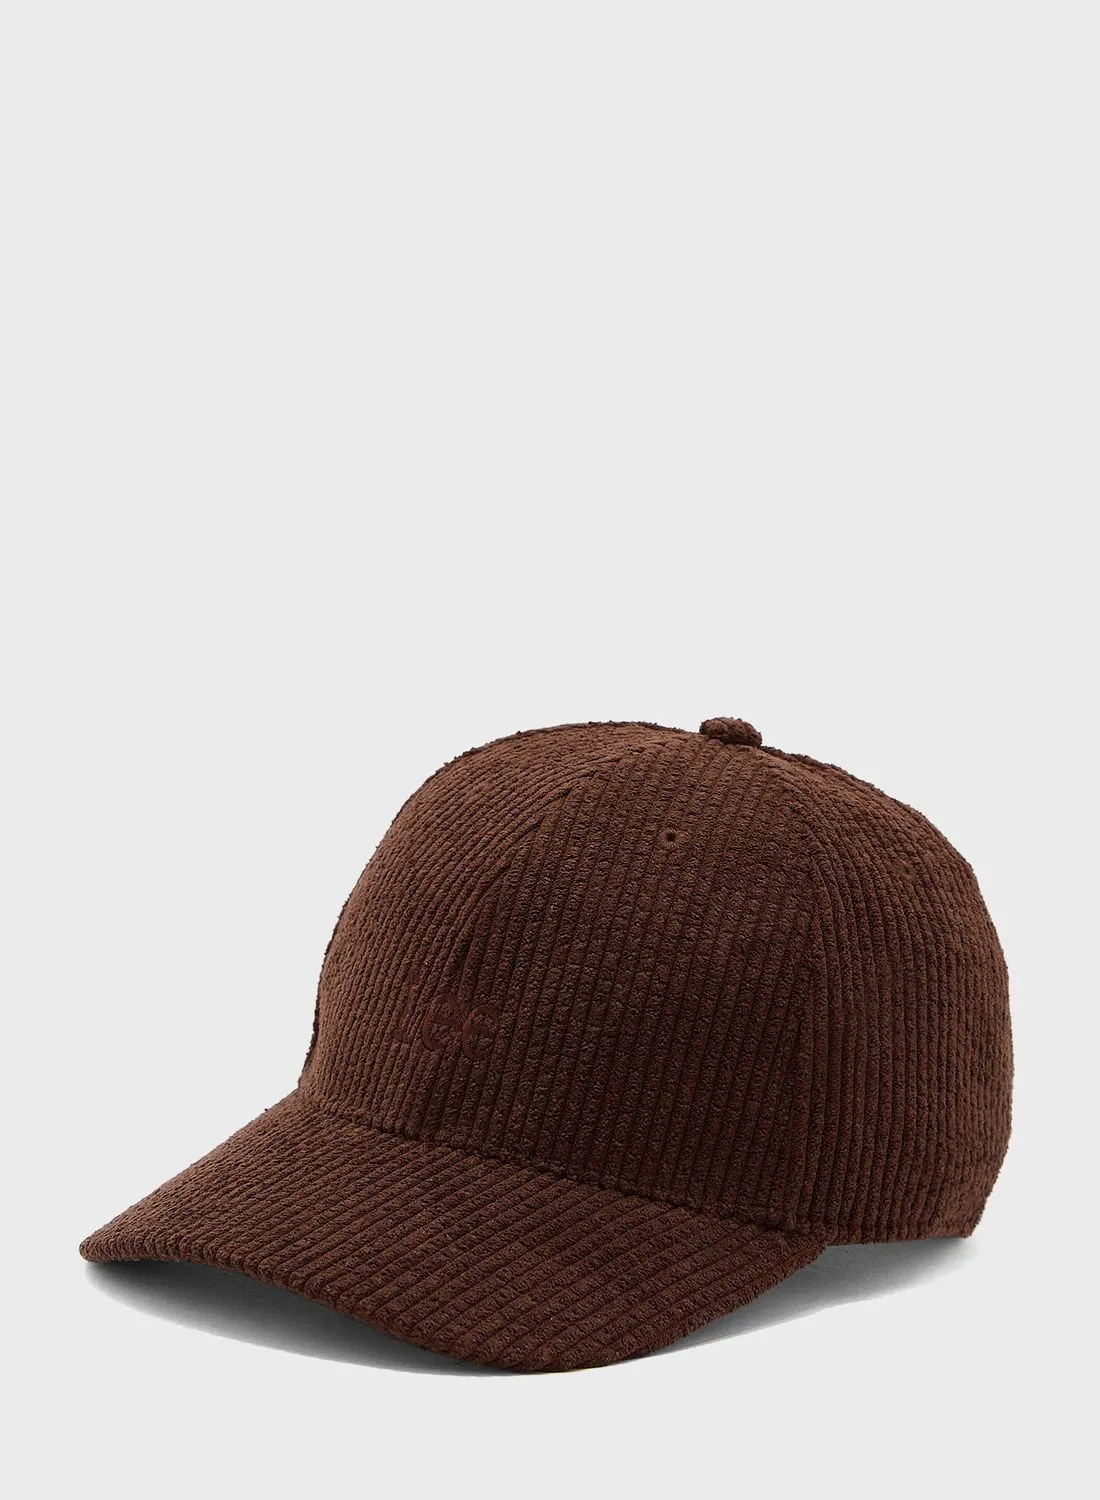 قبعة بوما الأساسية